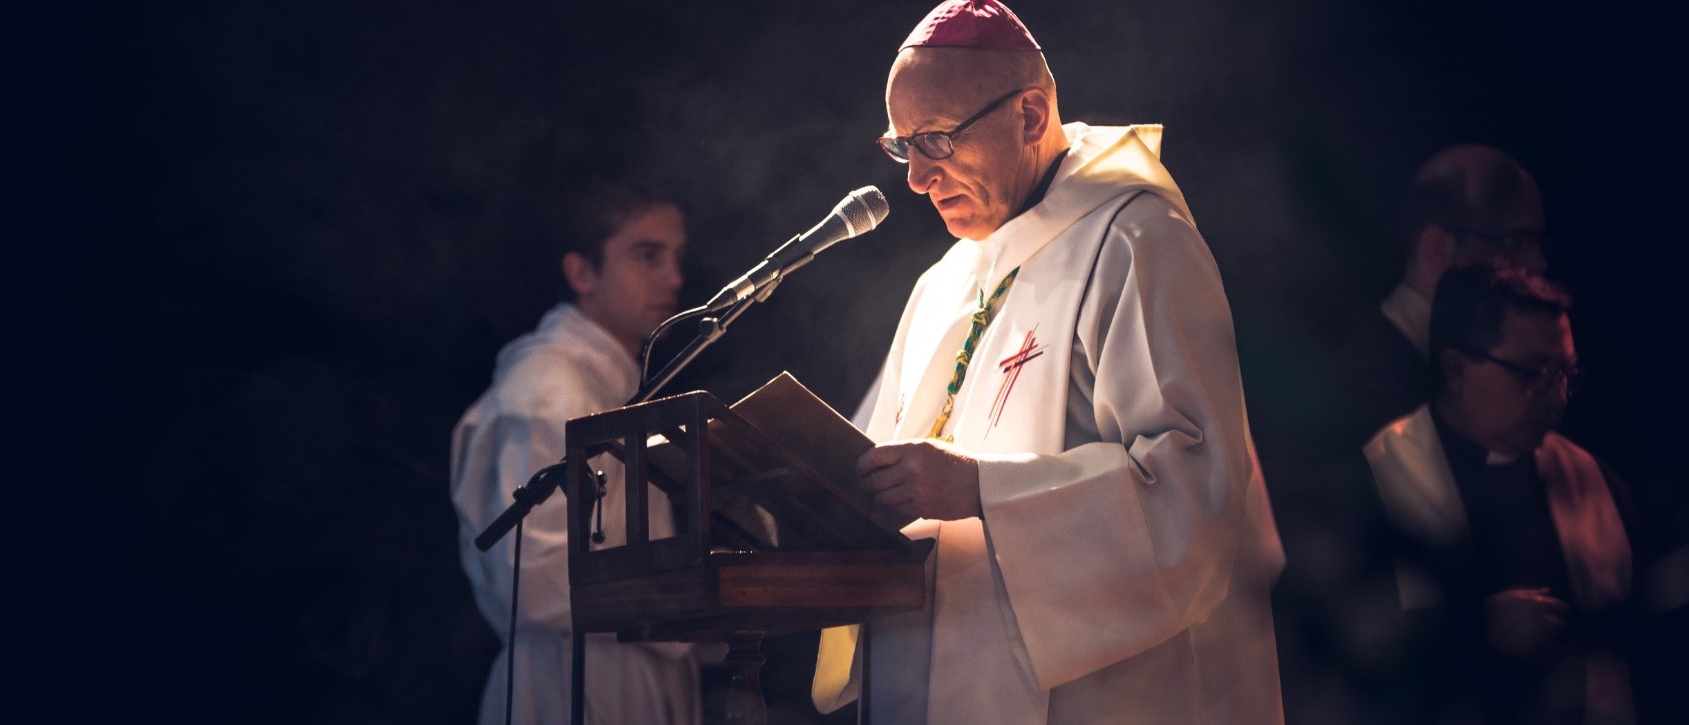 Mgr Dominique Rey est l'évêque controversé de Fréjus-Toulon | diocèse de Fréjus-Toulon  